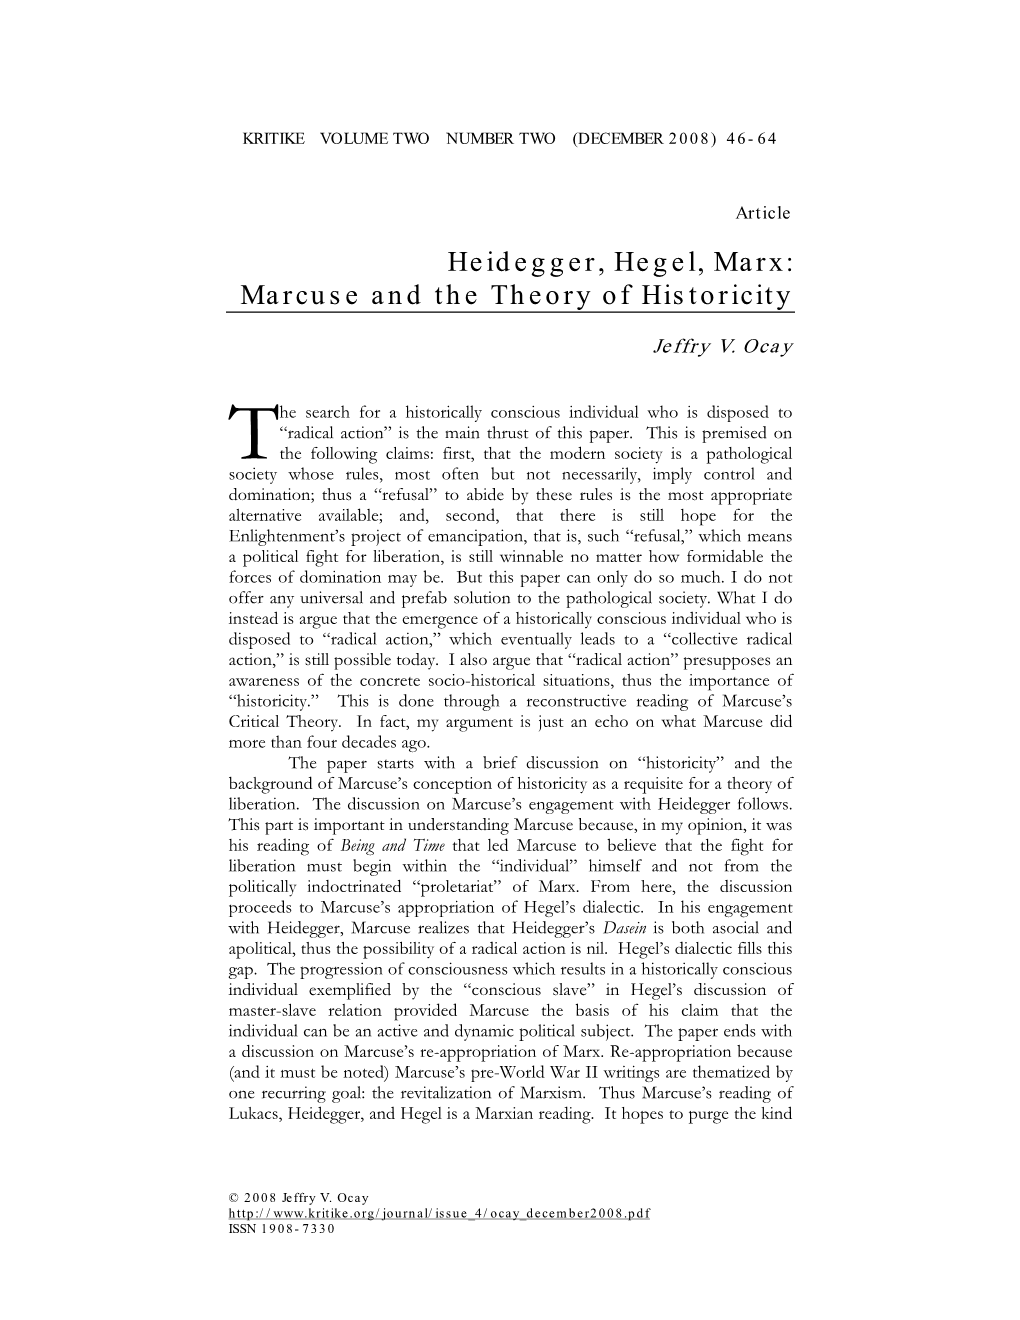 Heidegger, Hegel, Marx: Marcuse and the Theory of Historicity